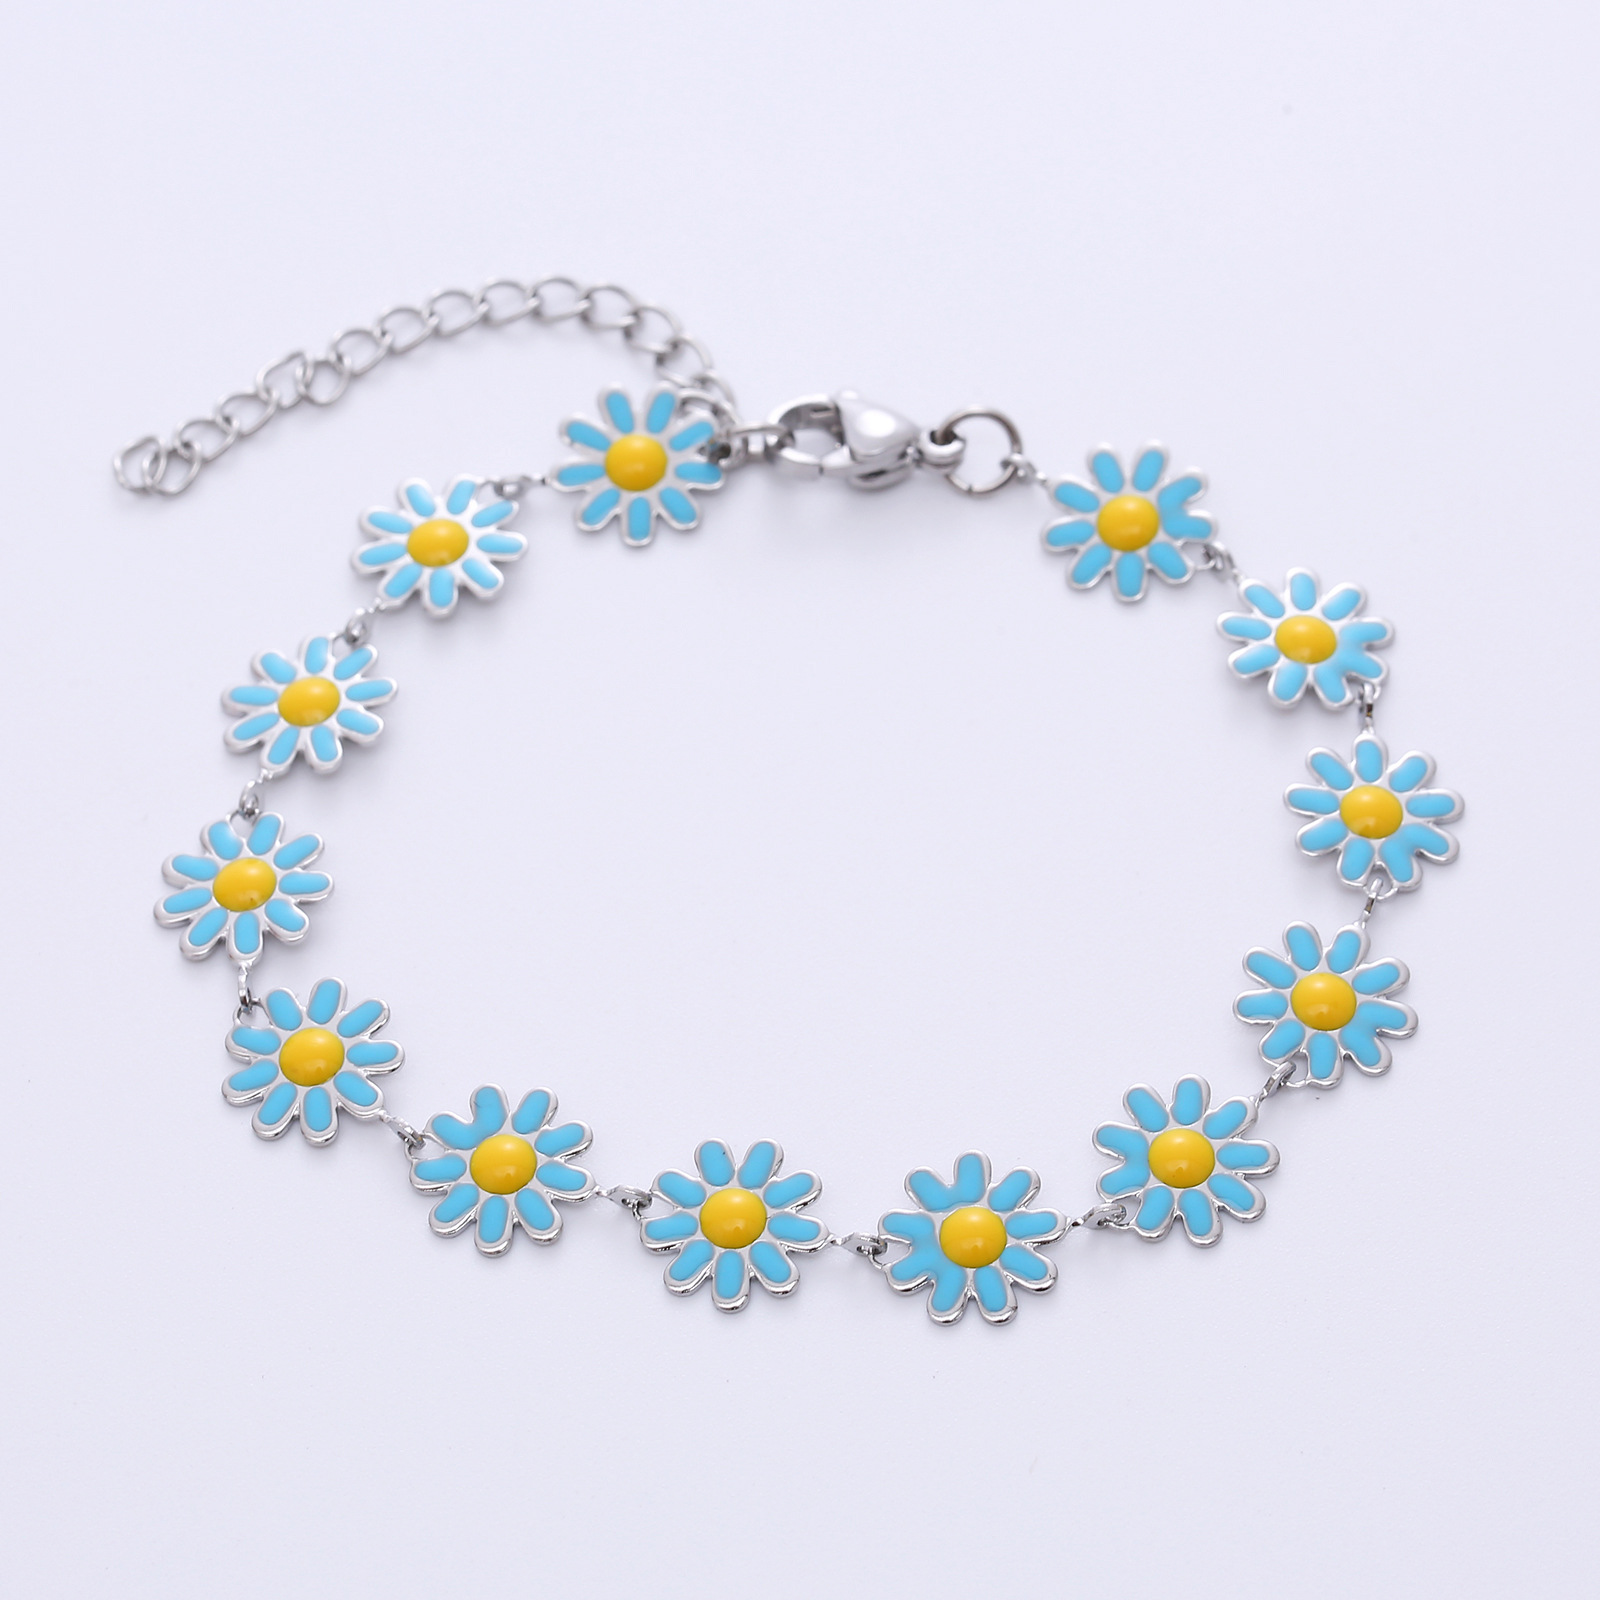 5:Silver, blue flowers